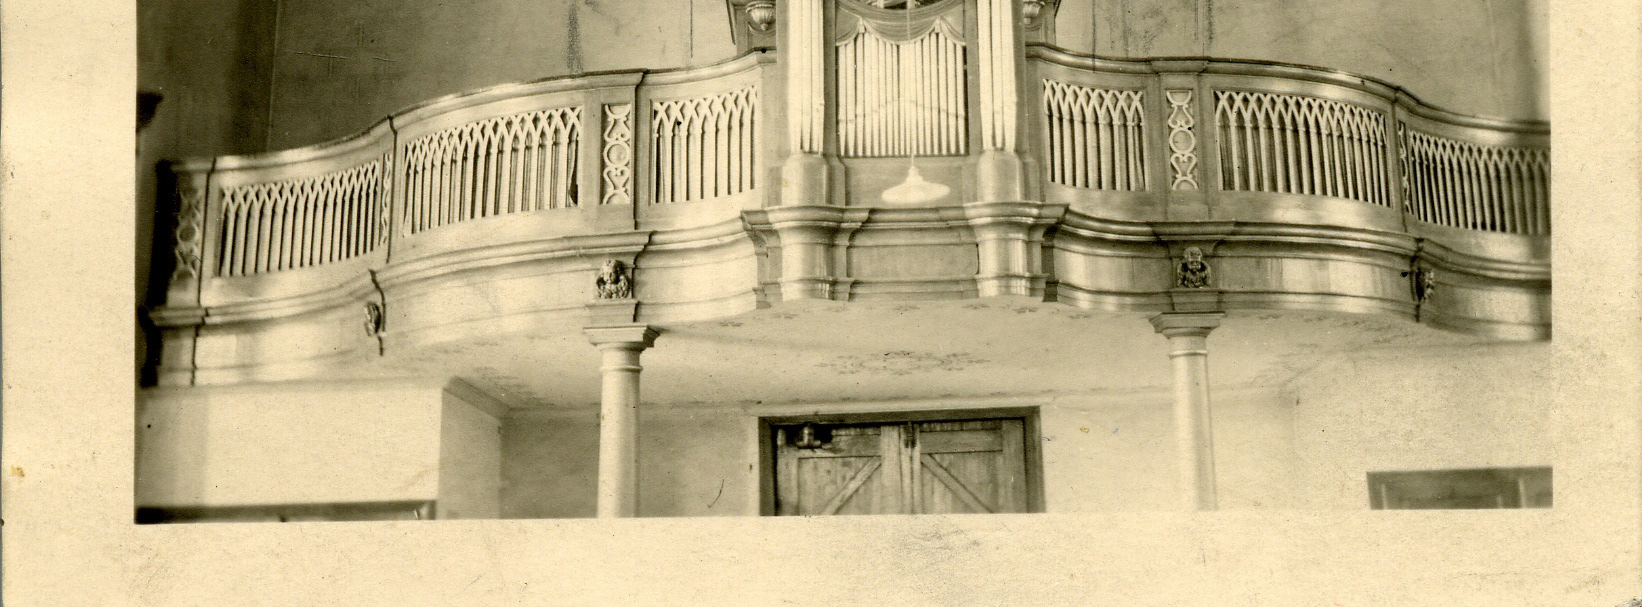 nooit gebouwd is, ofwel vóór 1955 verwijderd was. In de doksaal-balustrade bevindt zich een orgelprospect, uit de eerste helft van de 19 de eeuw (1836?